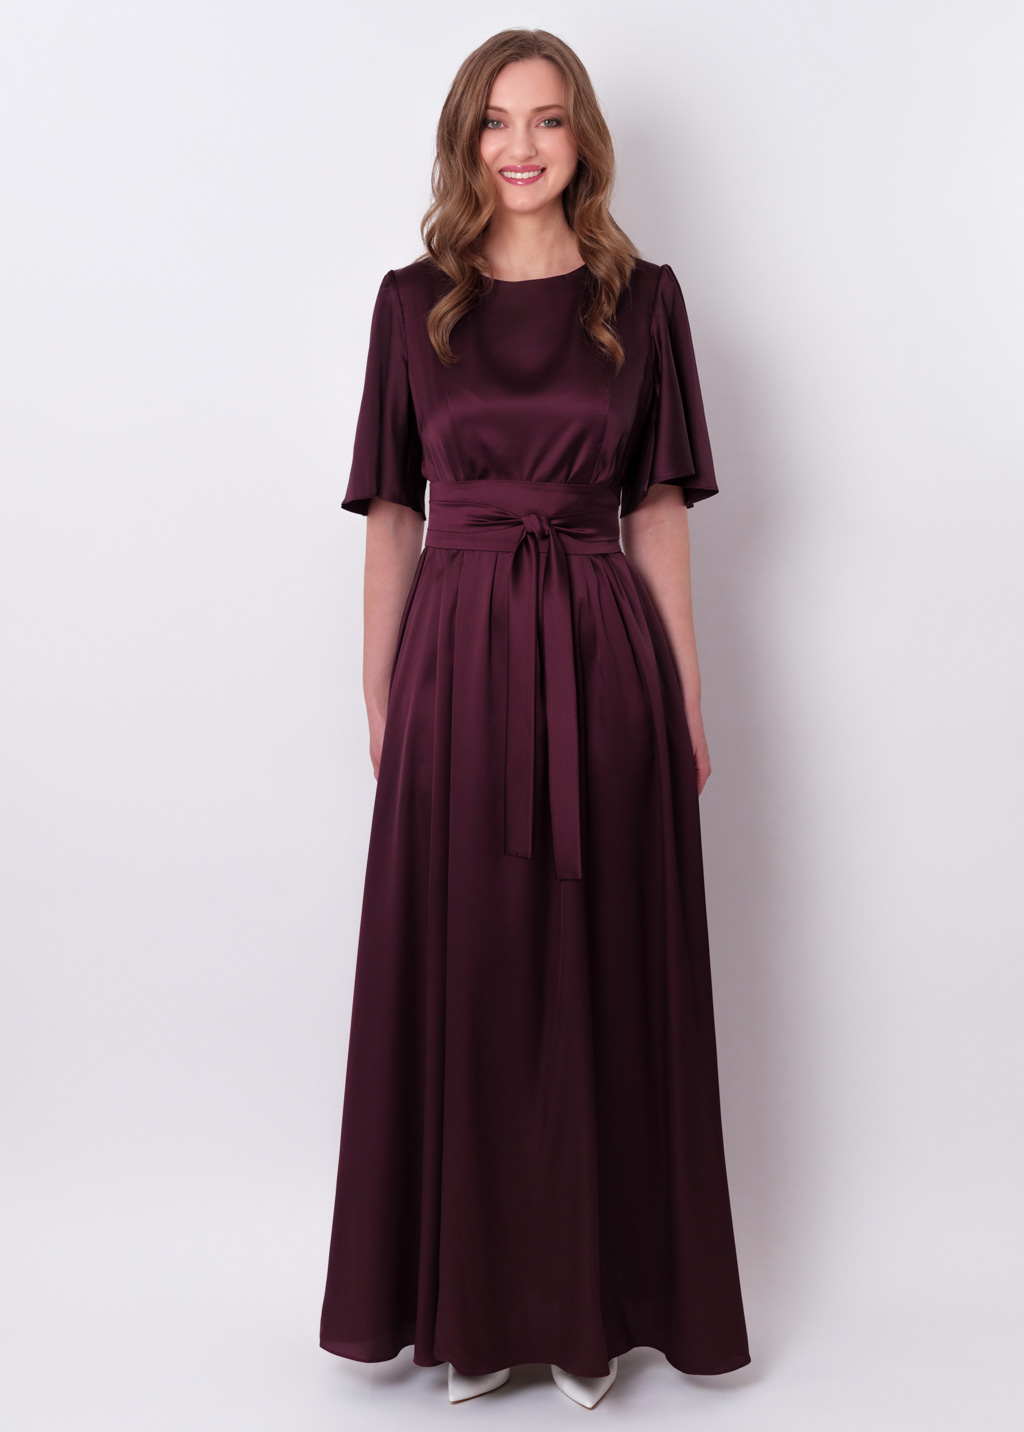 Dark burgundy silk dress with belt